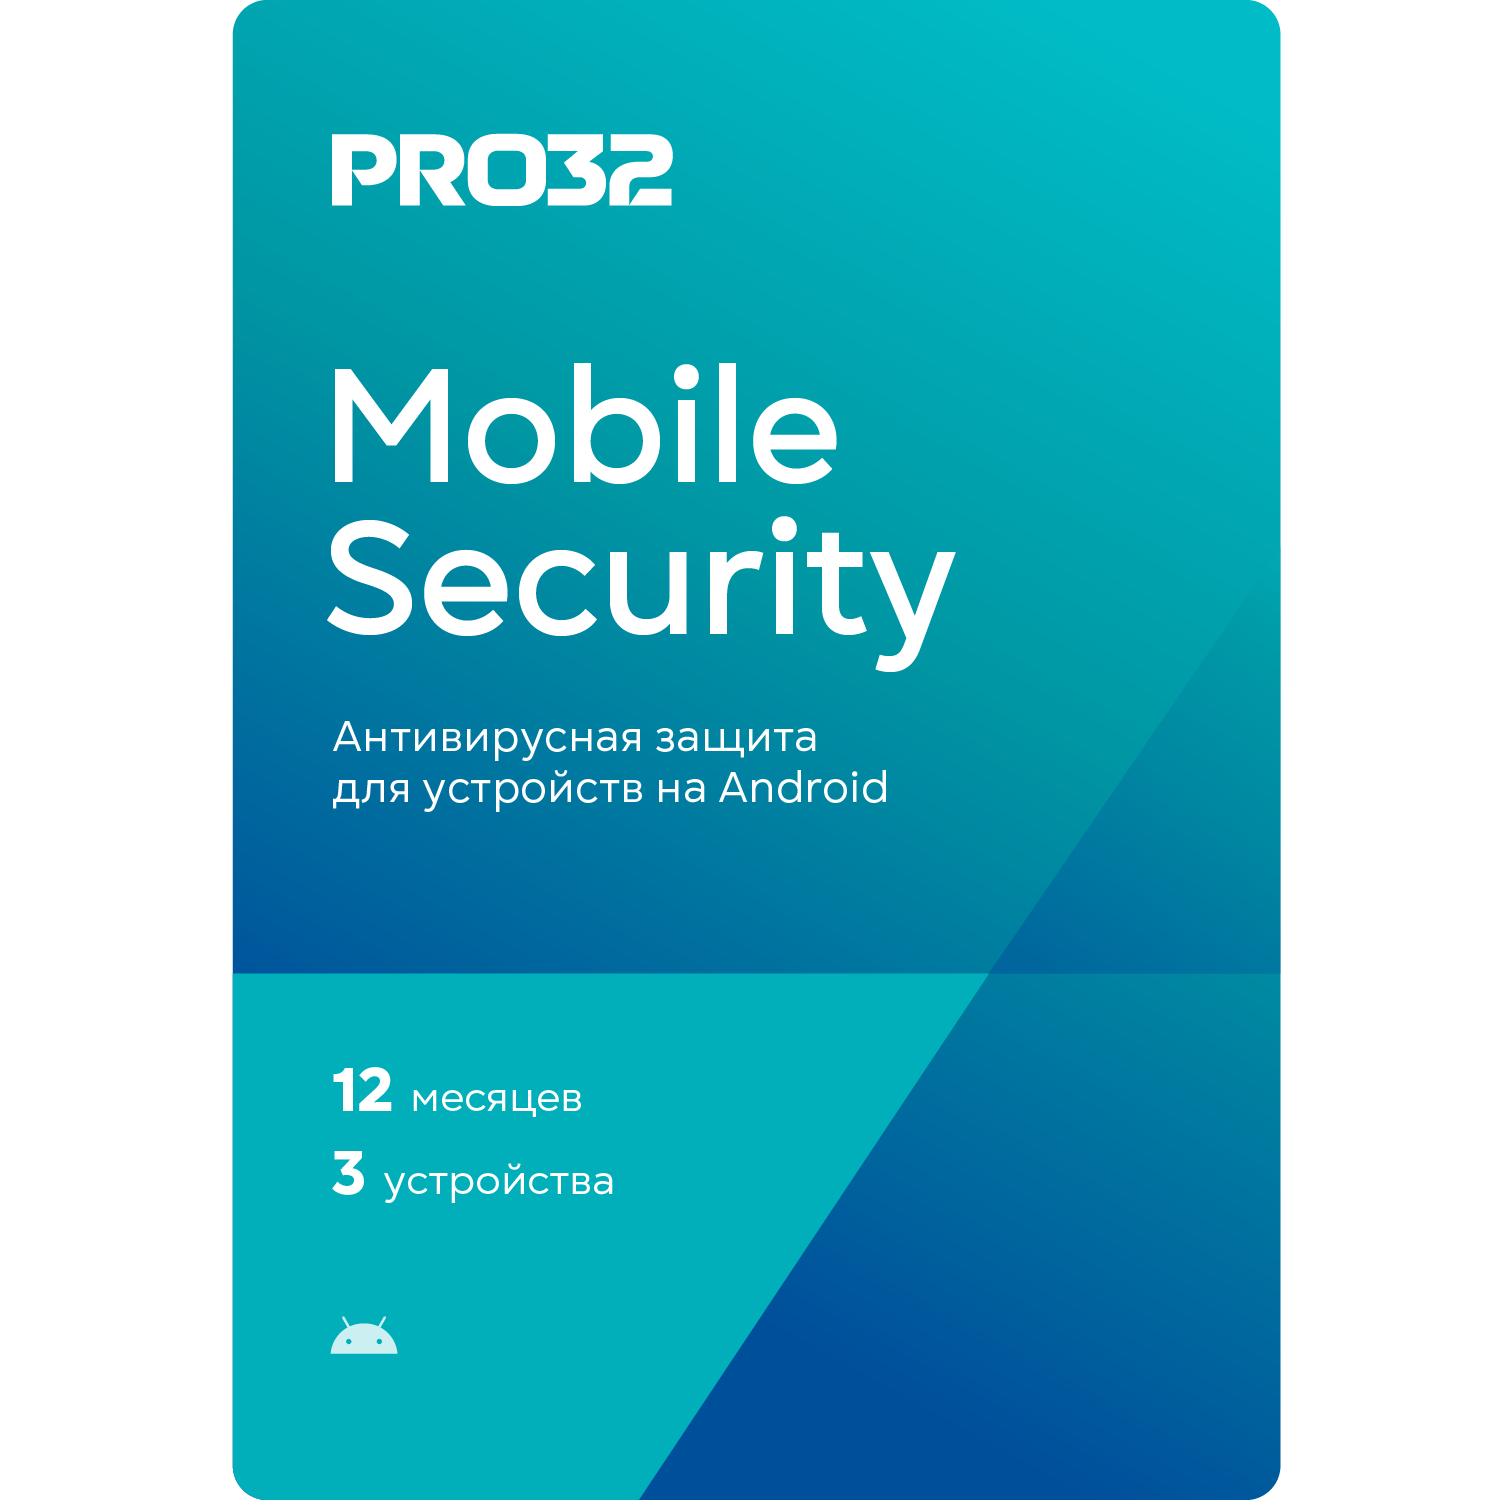 Sécurité mobile PRO32